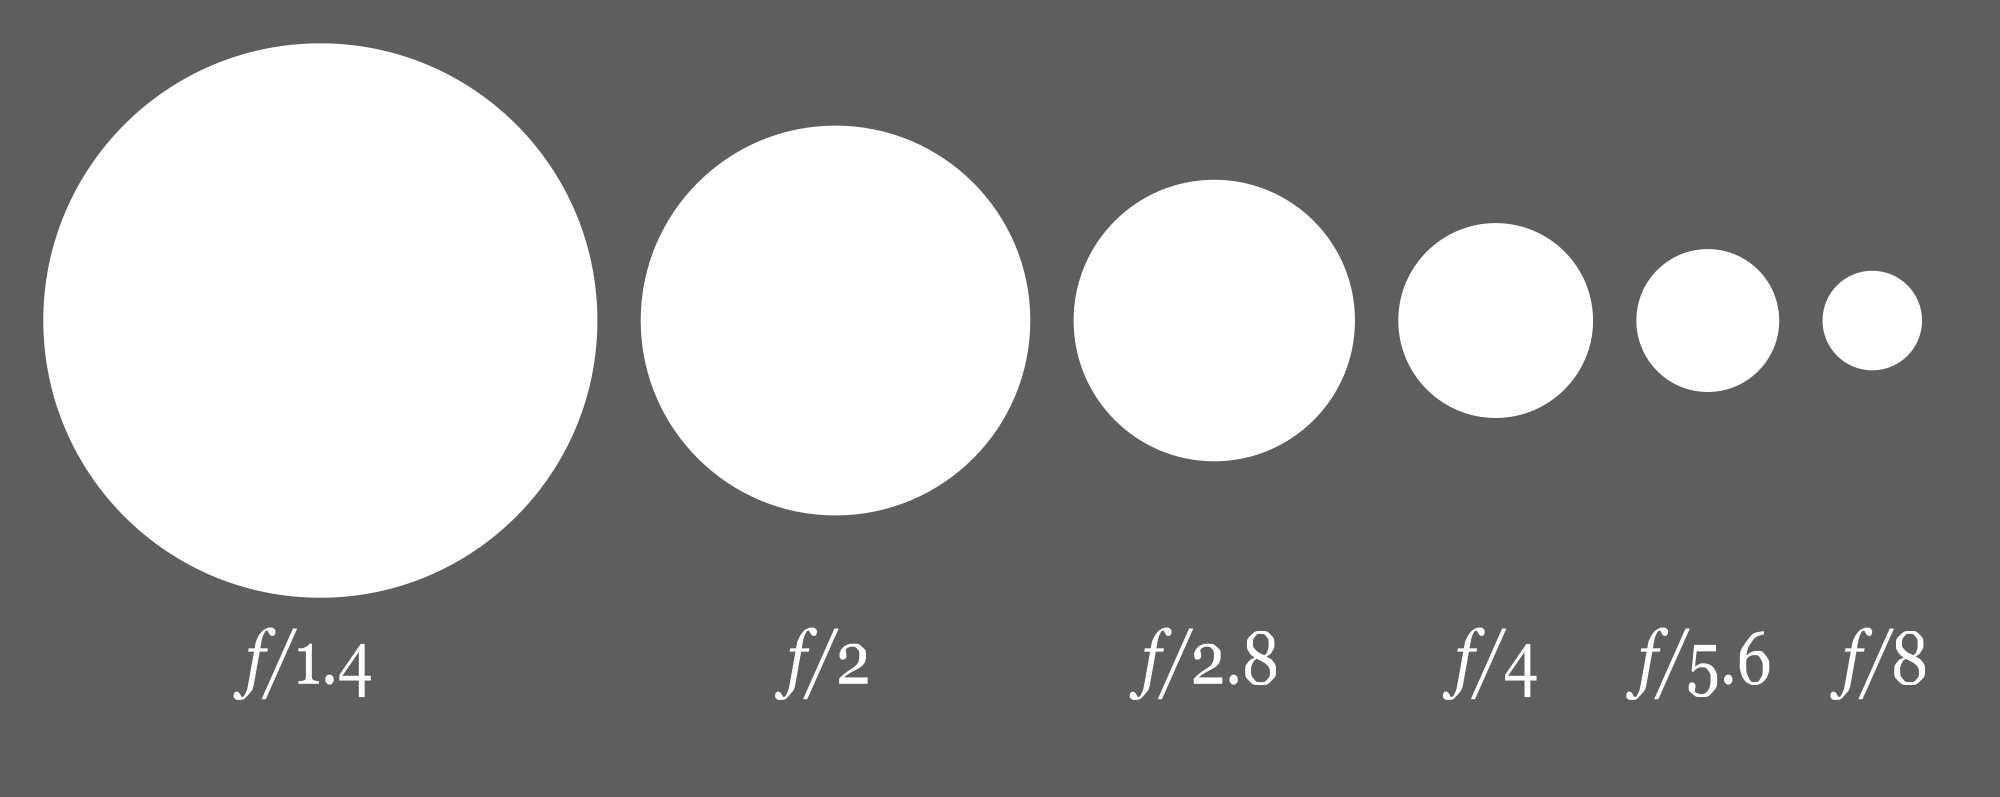 Farklı f değerleri, farklı açıklıkları göstermektedir.